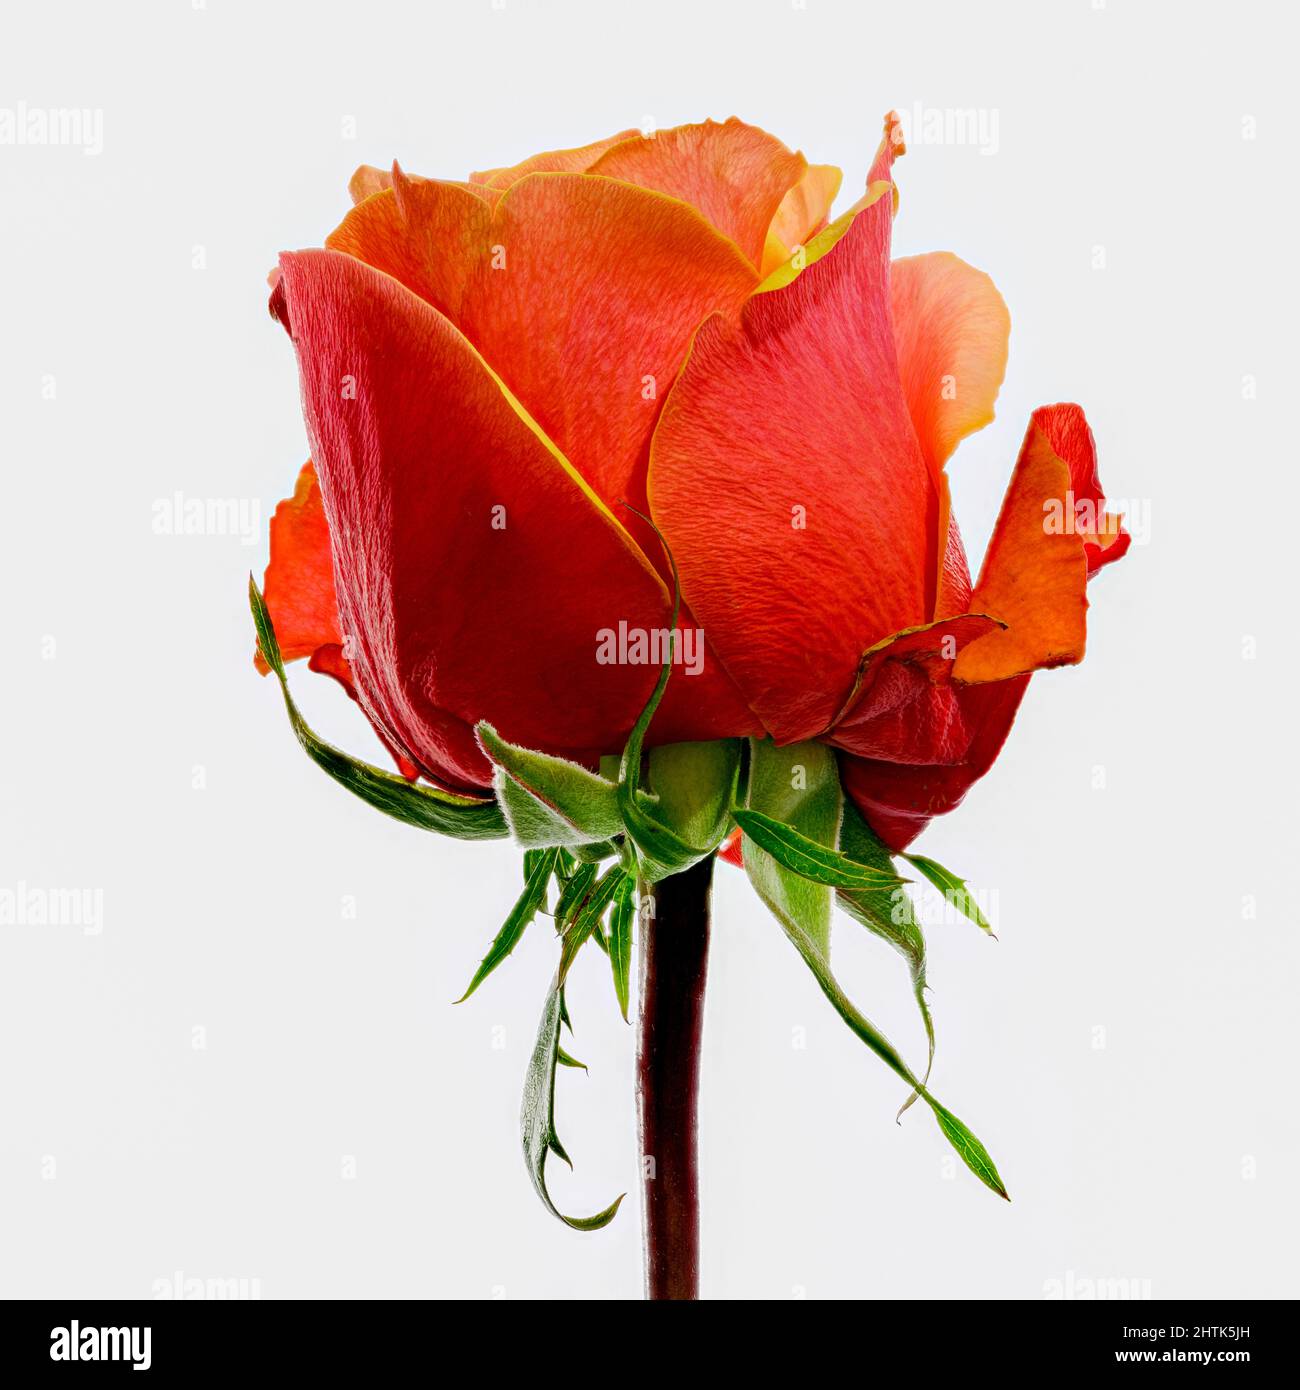 Wunderschöne orange-rote Rosenblüte, die gerade in Blüte platzt Stockfoto